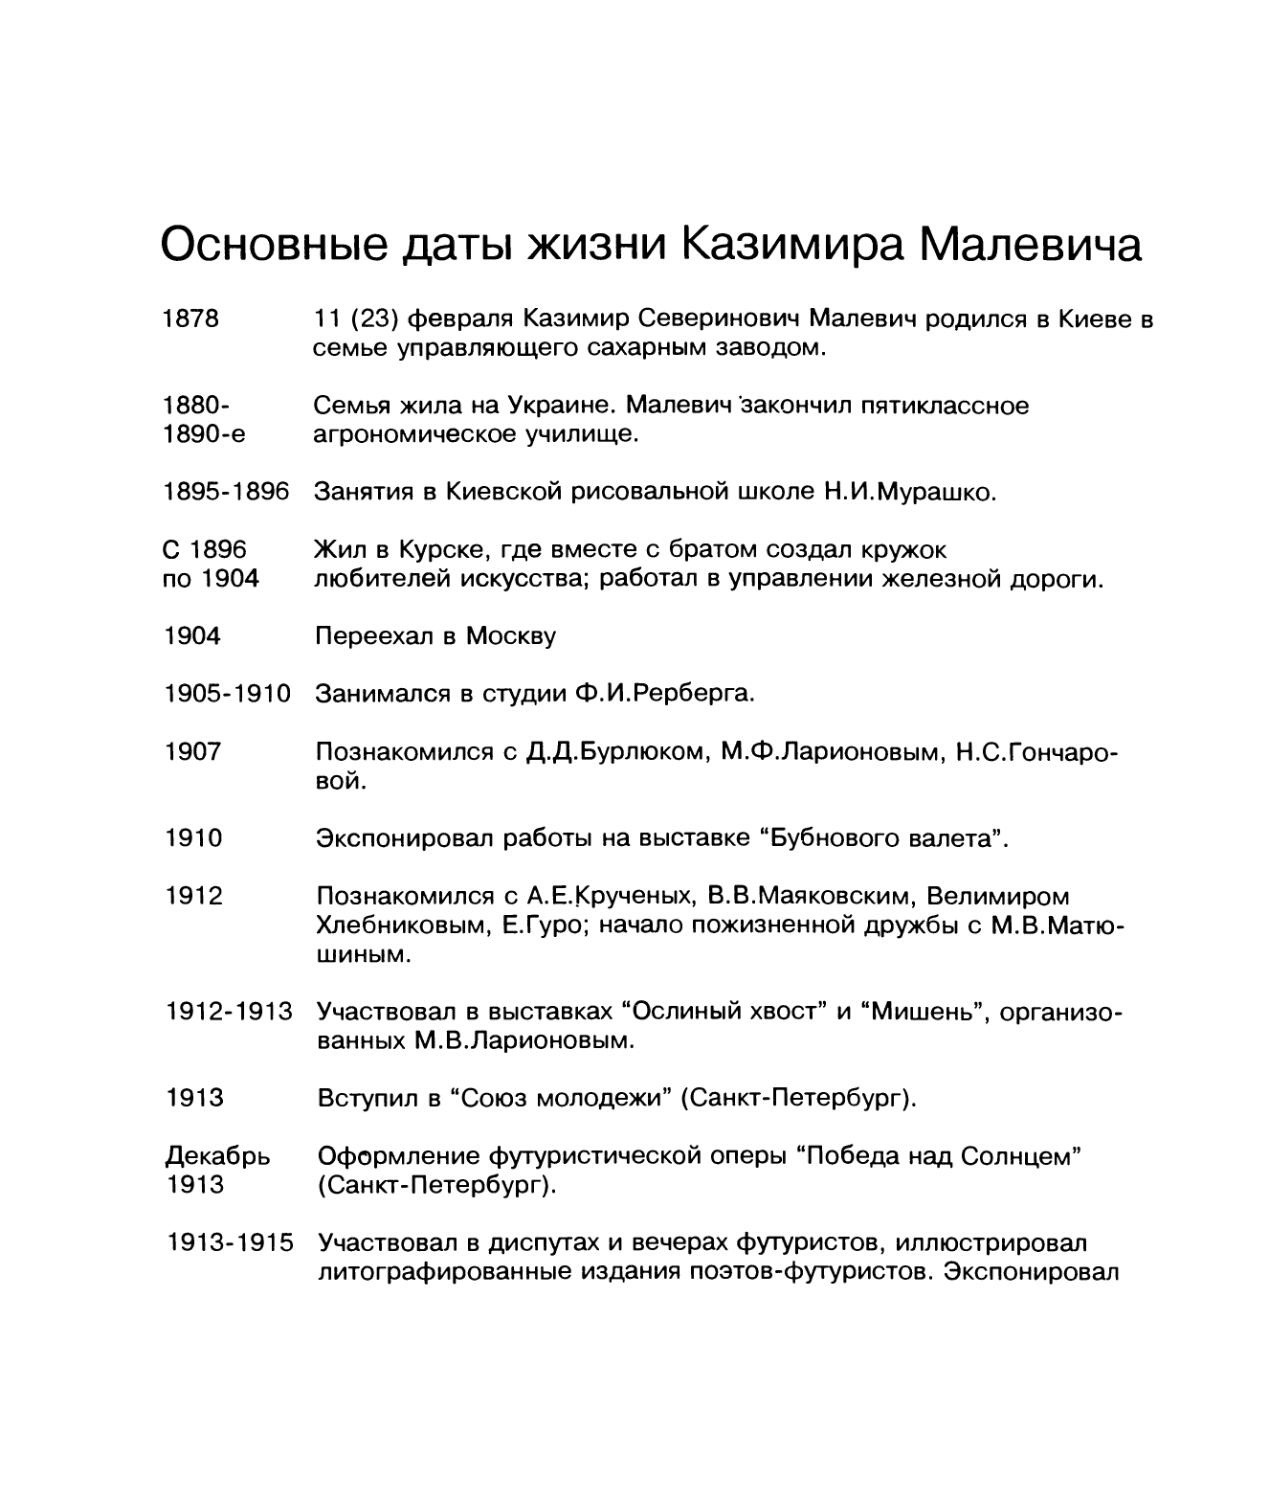 Основные даты жизни Казимира Малевича